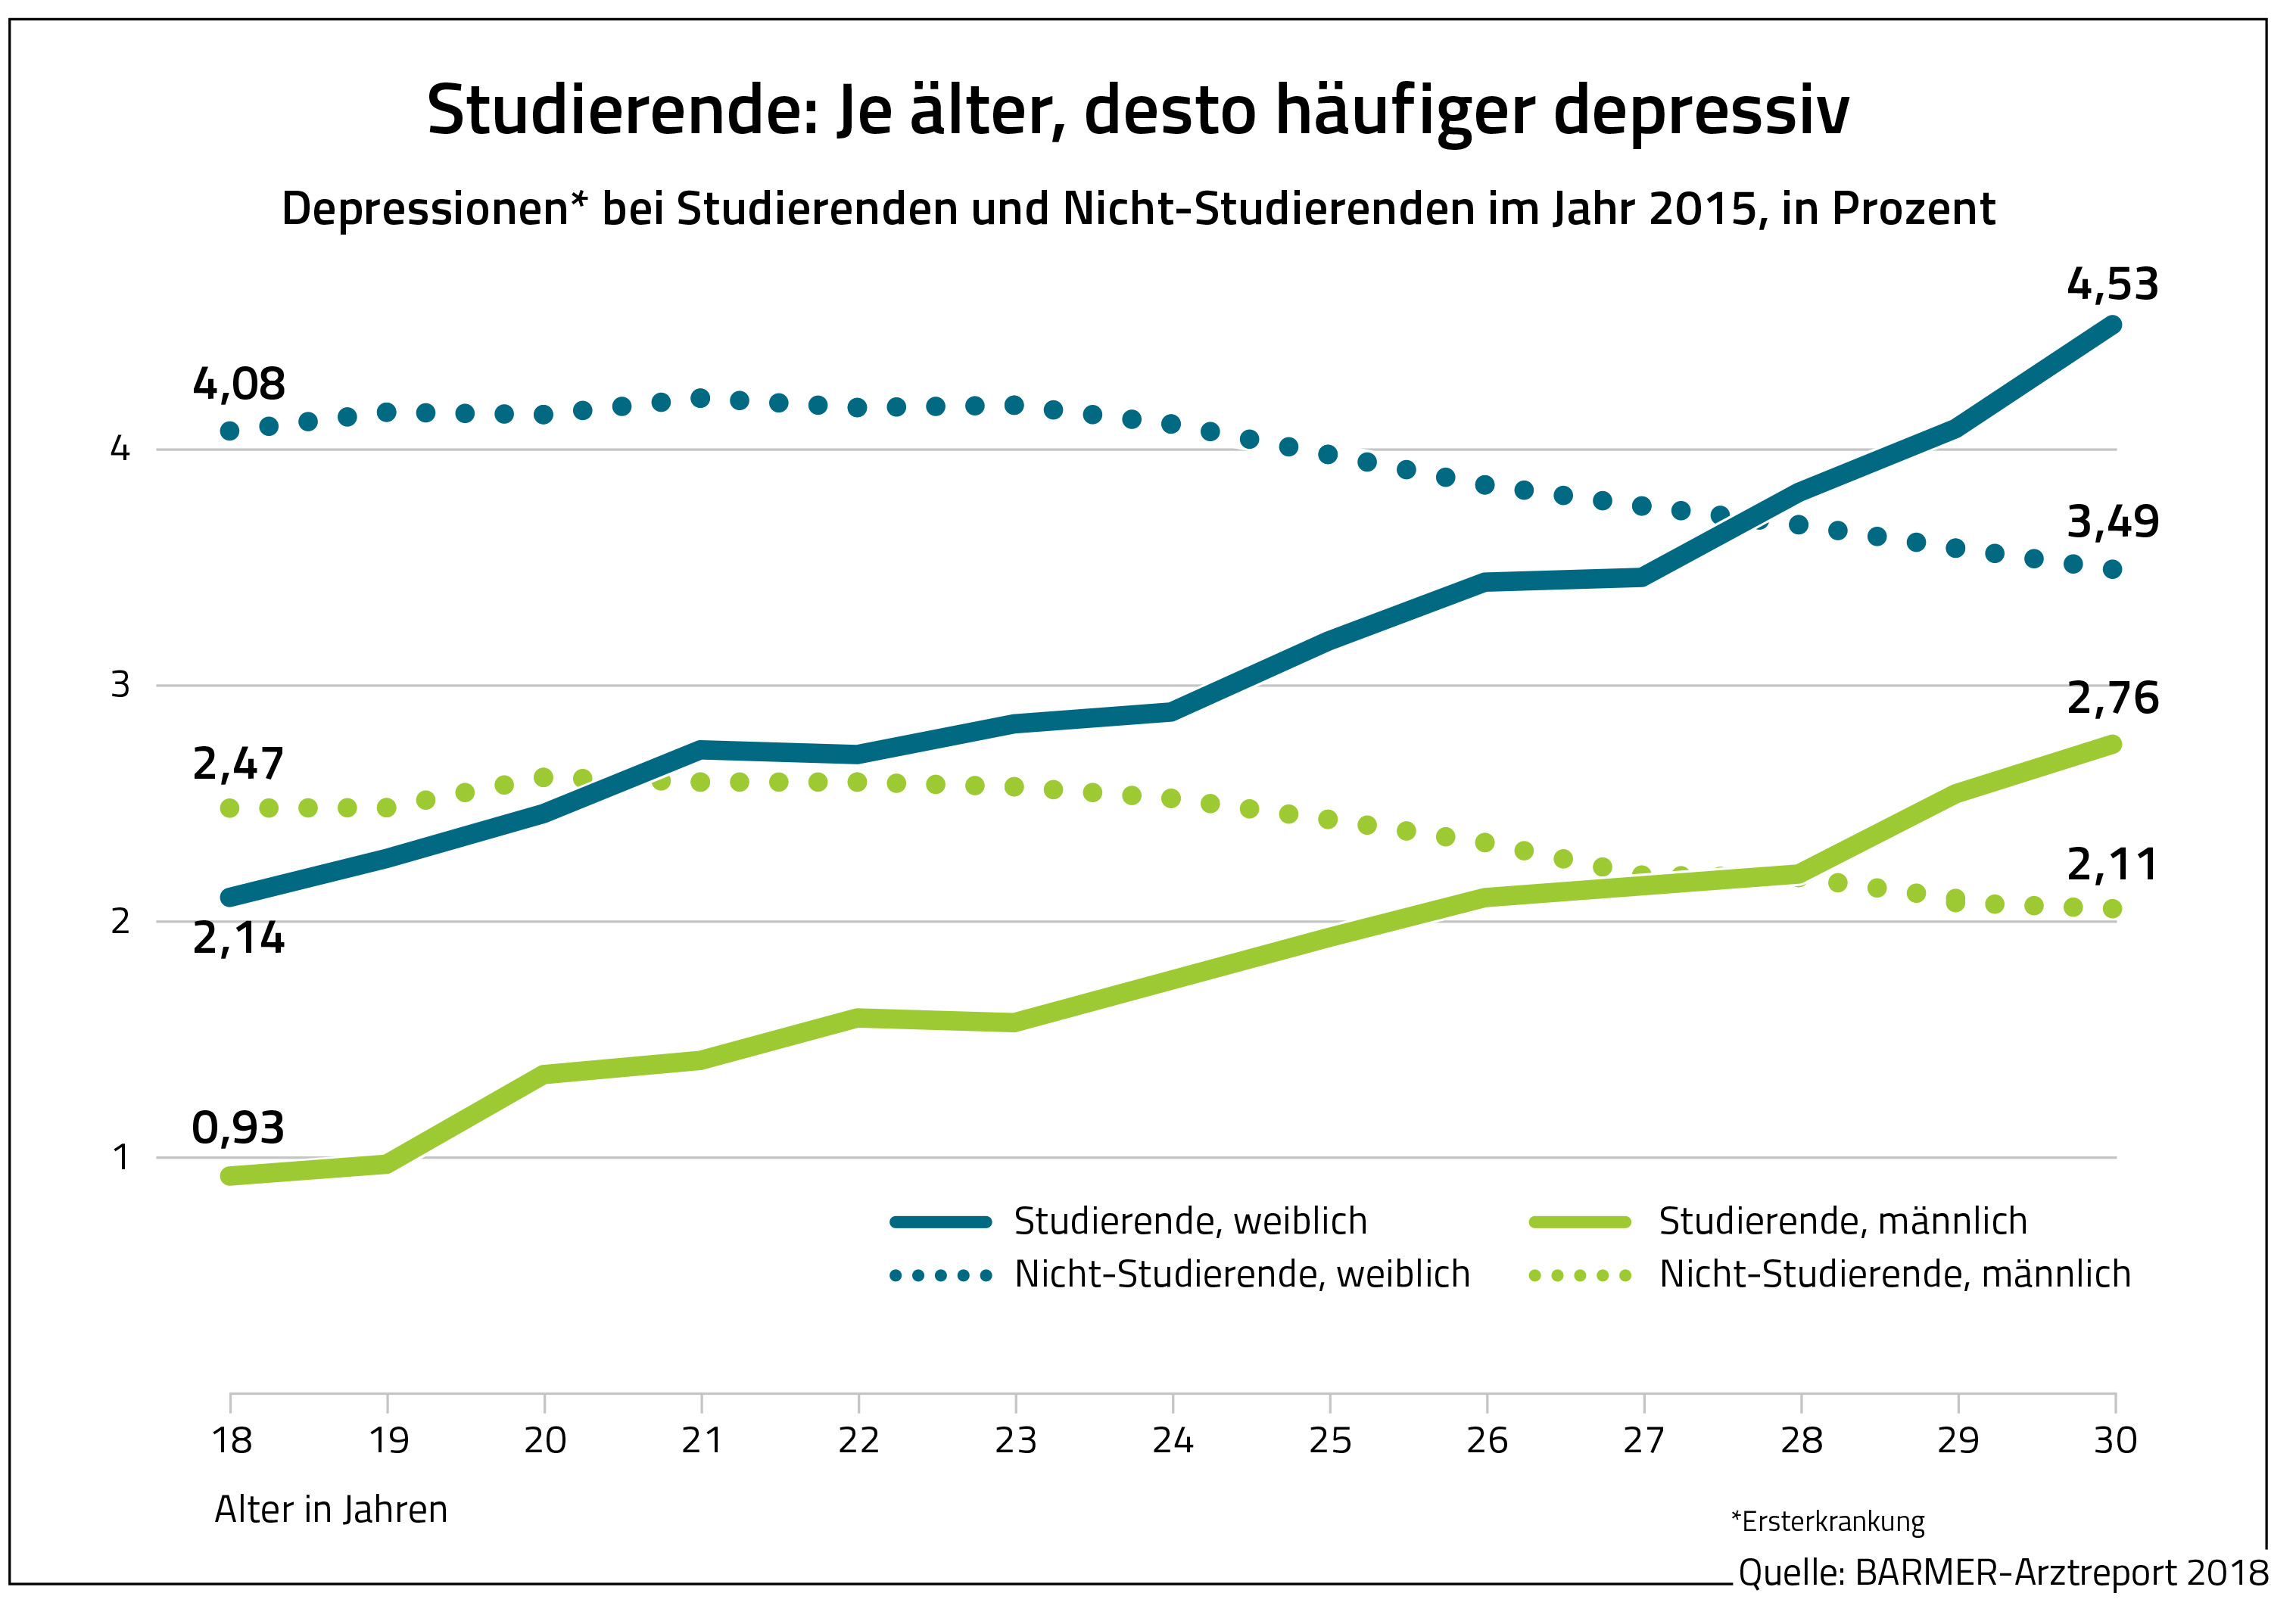 Die Grafik zeigt den Anteil der Depressionen bei Studierende und Nicht-Studierende im Jahr 2015, in Prozent.